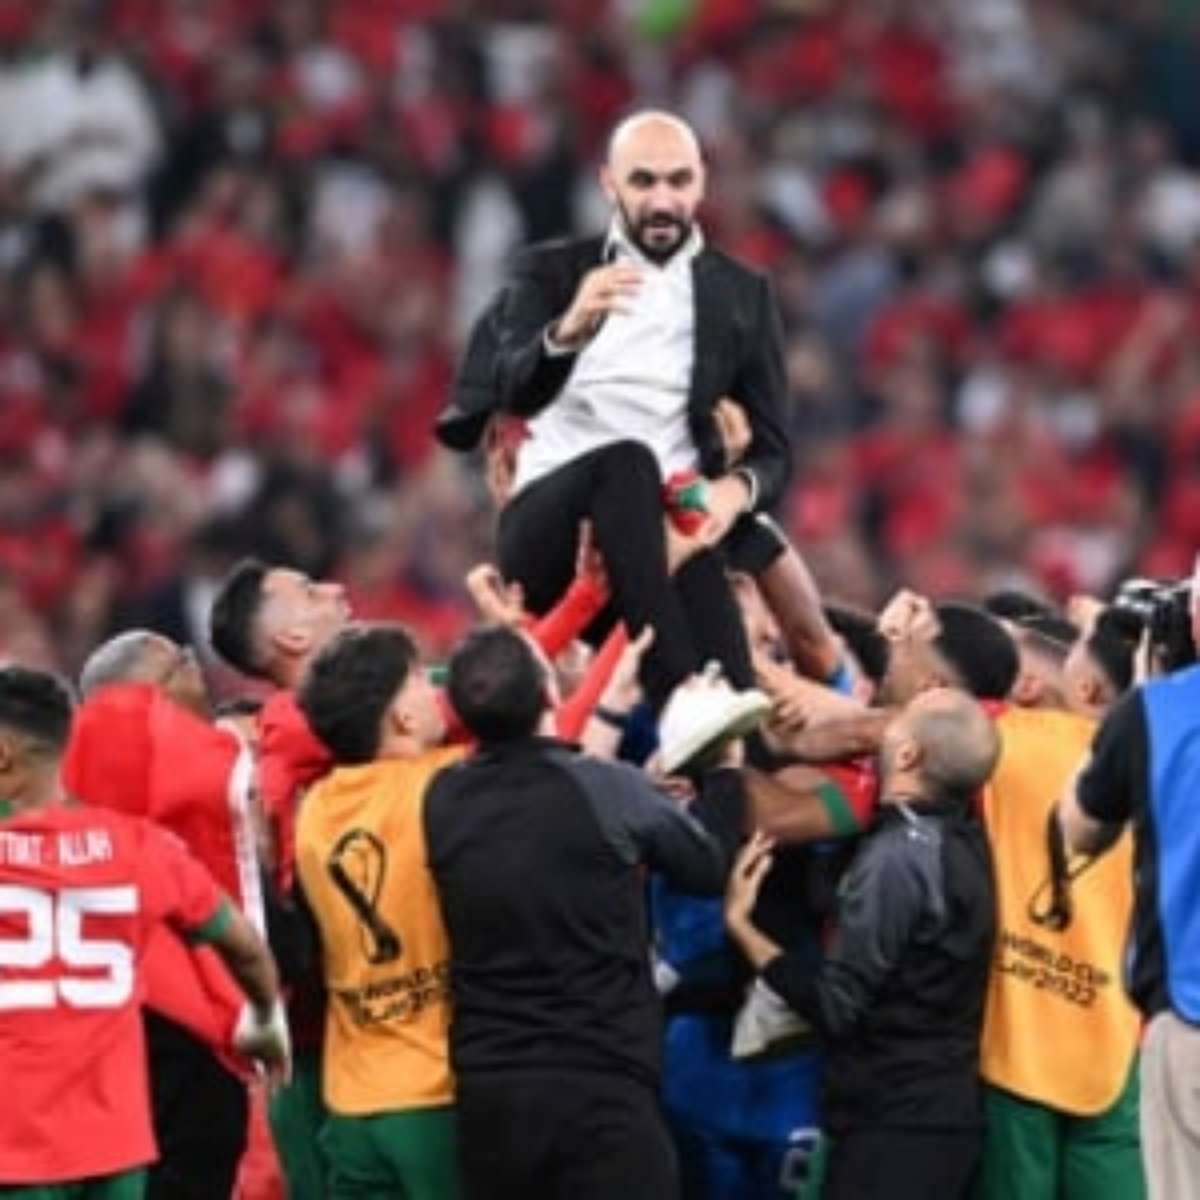 VÍDEO: os melhores momentos da vitória e classificação histórica de  Marrocos sobre Portugal na Copa